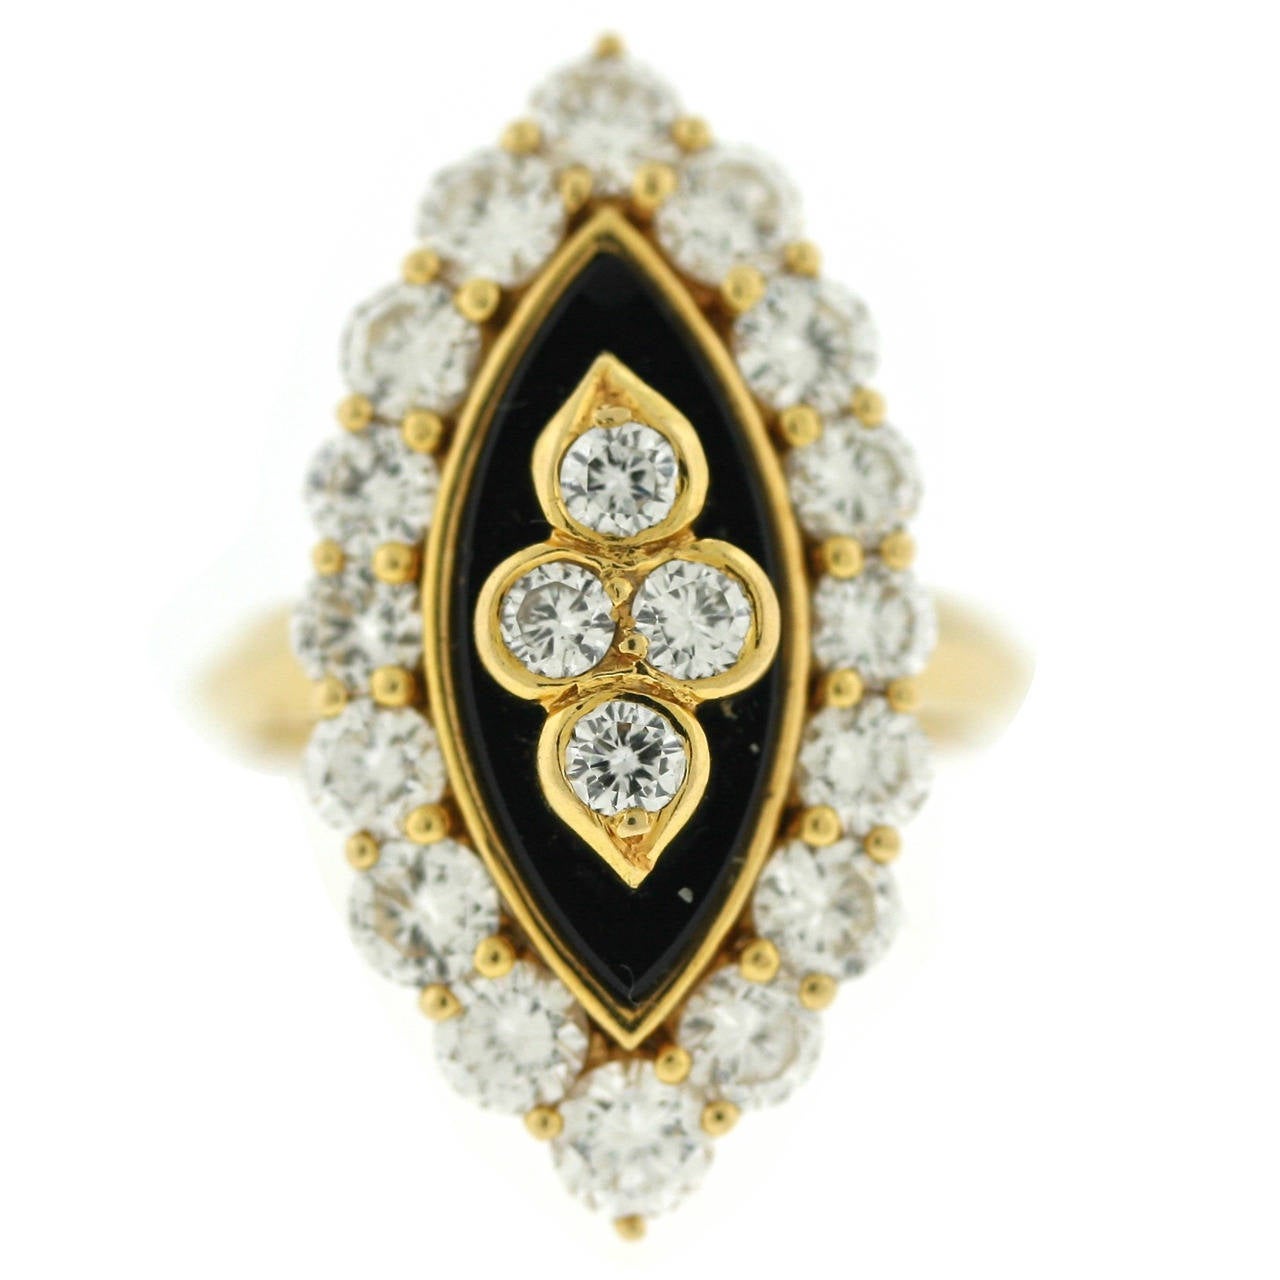 Van Cleef & Arpels Paris Onyx Diamond Gold Navette Ring